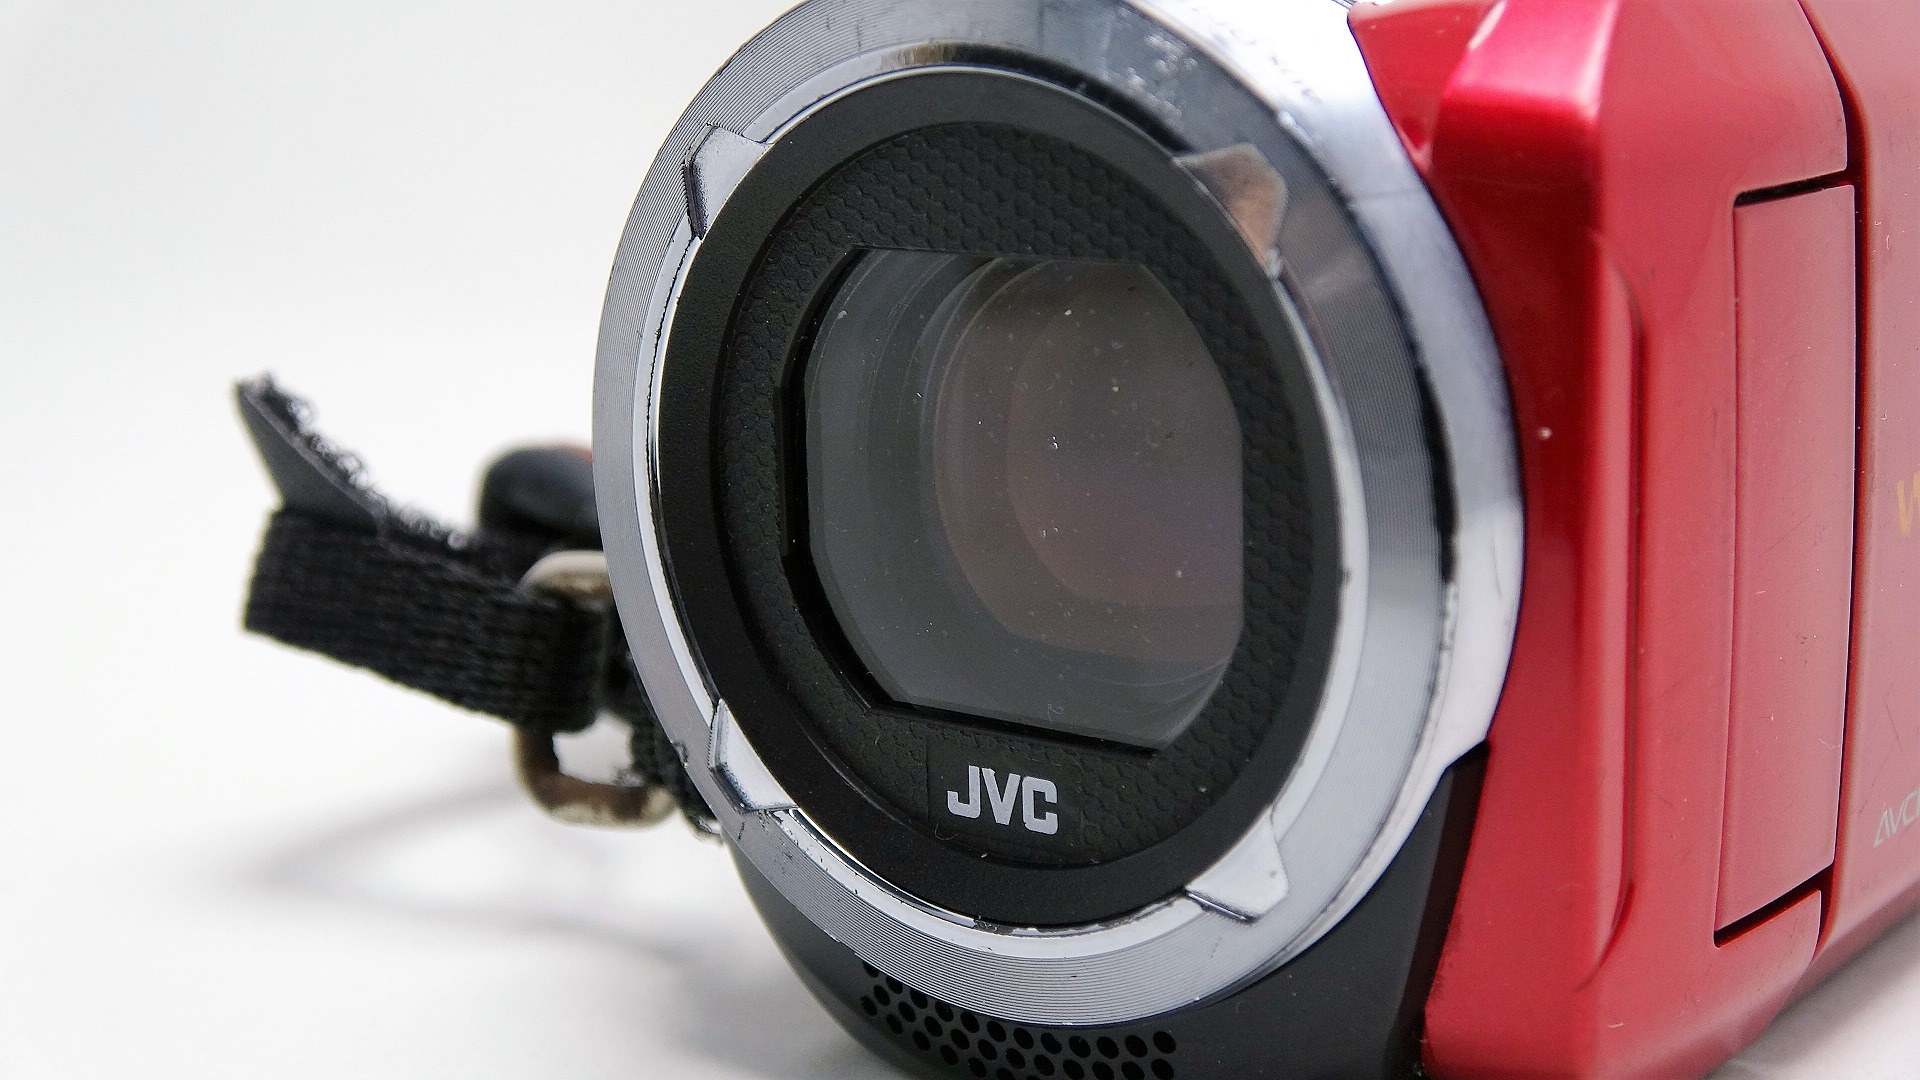 GZ-RX130-jvc-everio-水中でビデオカメラをぶつけ電源が入らない